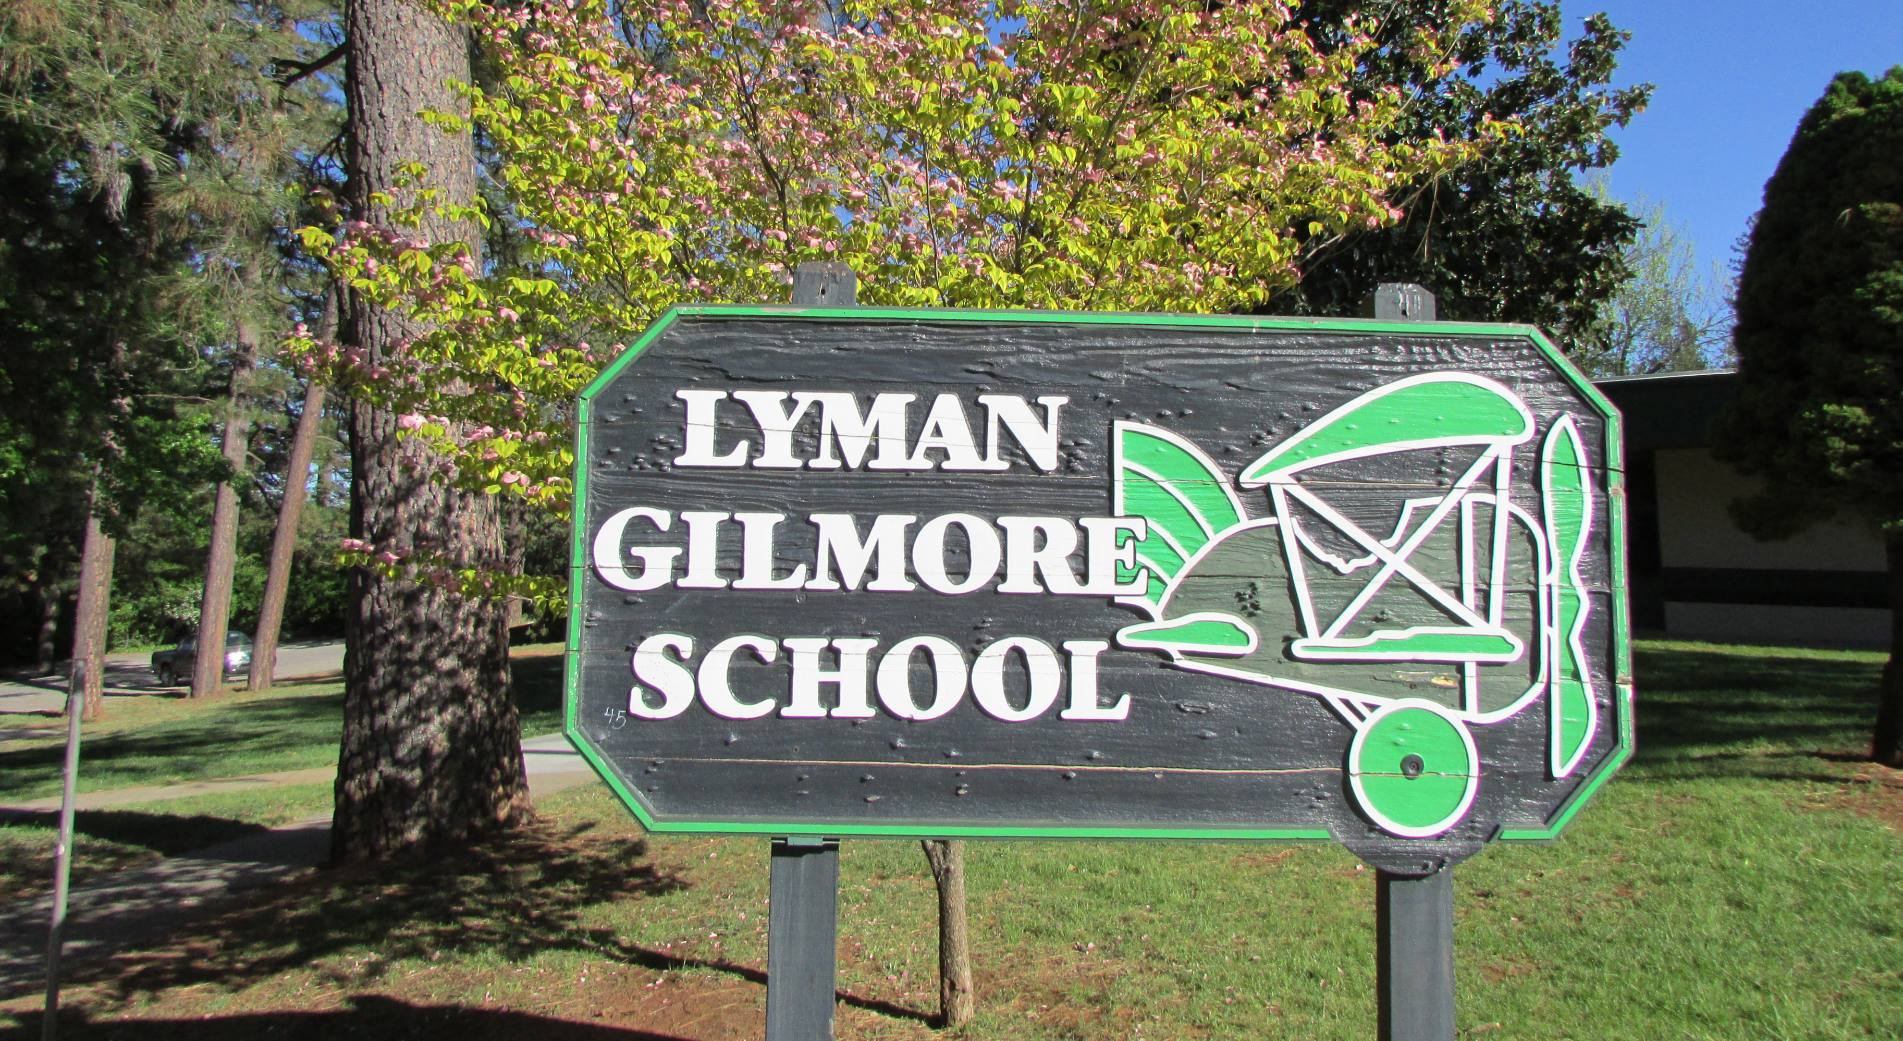 Lyman Gilmore School sign